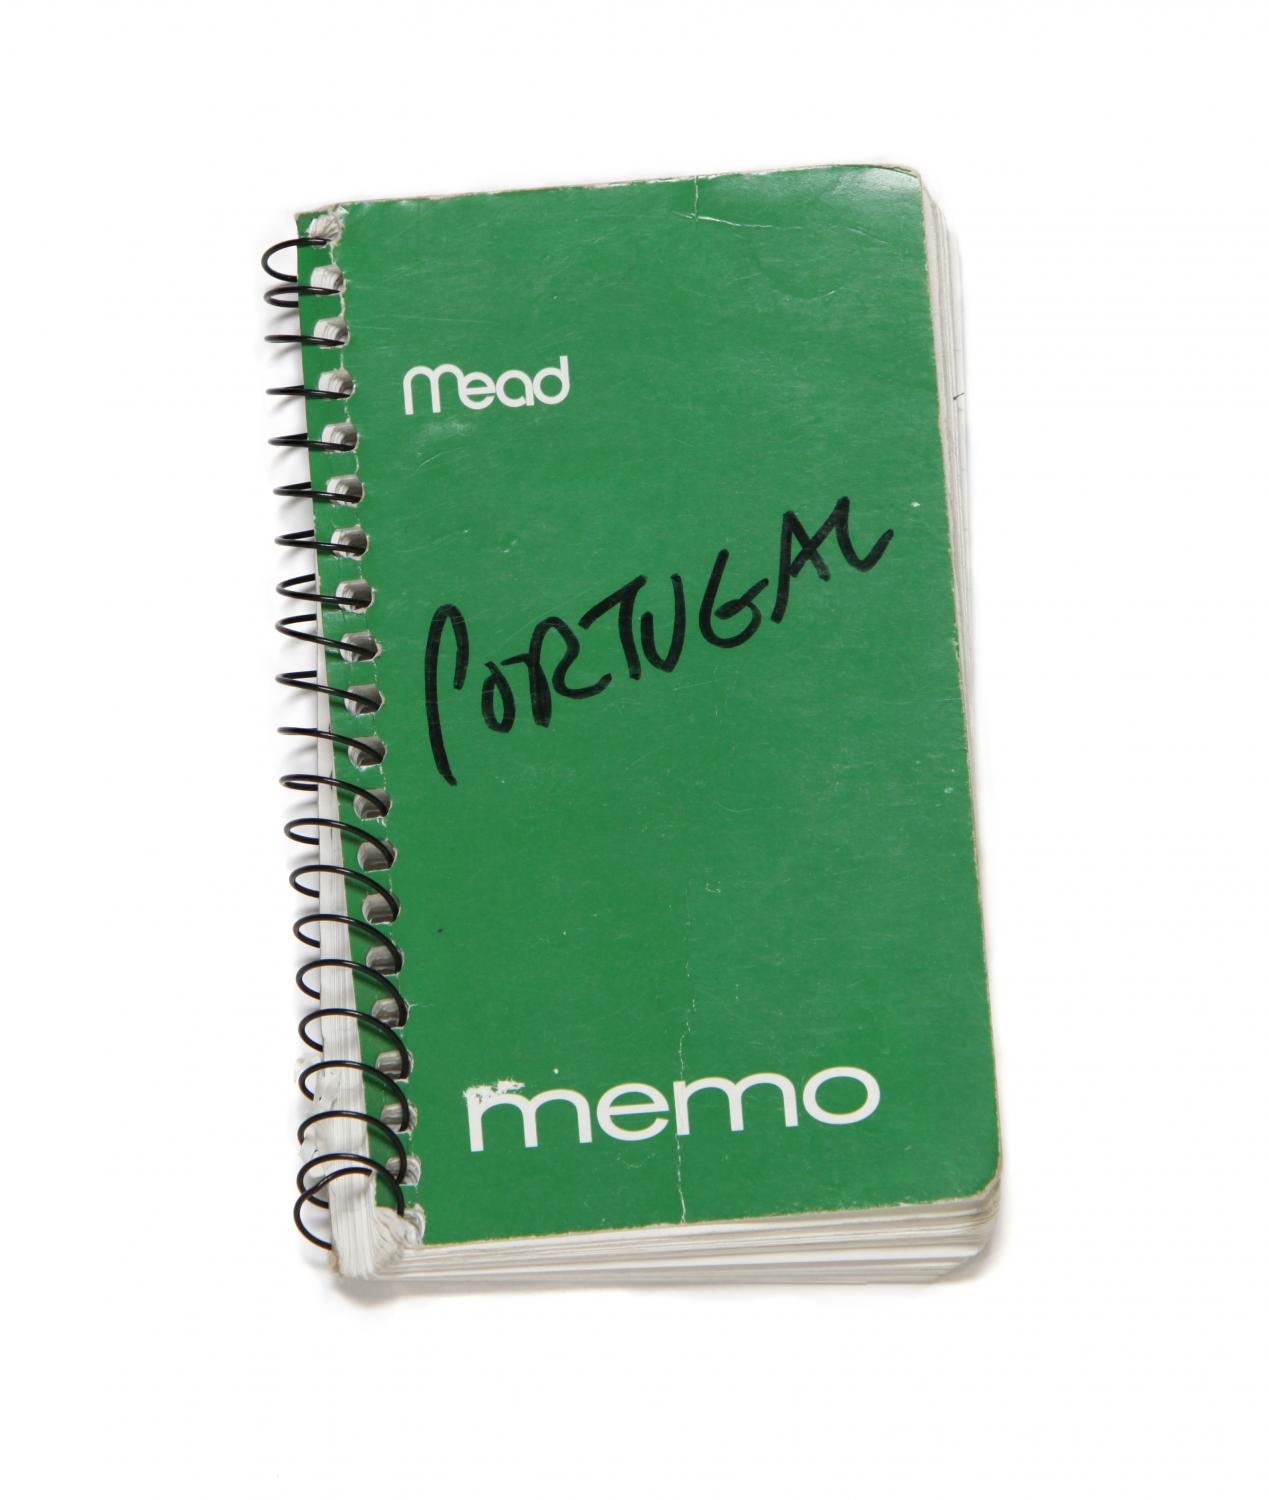 Notebook, 2004.